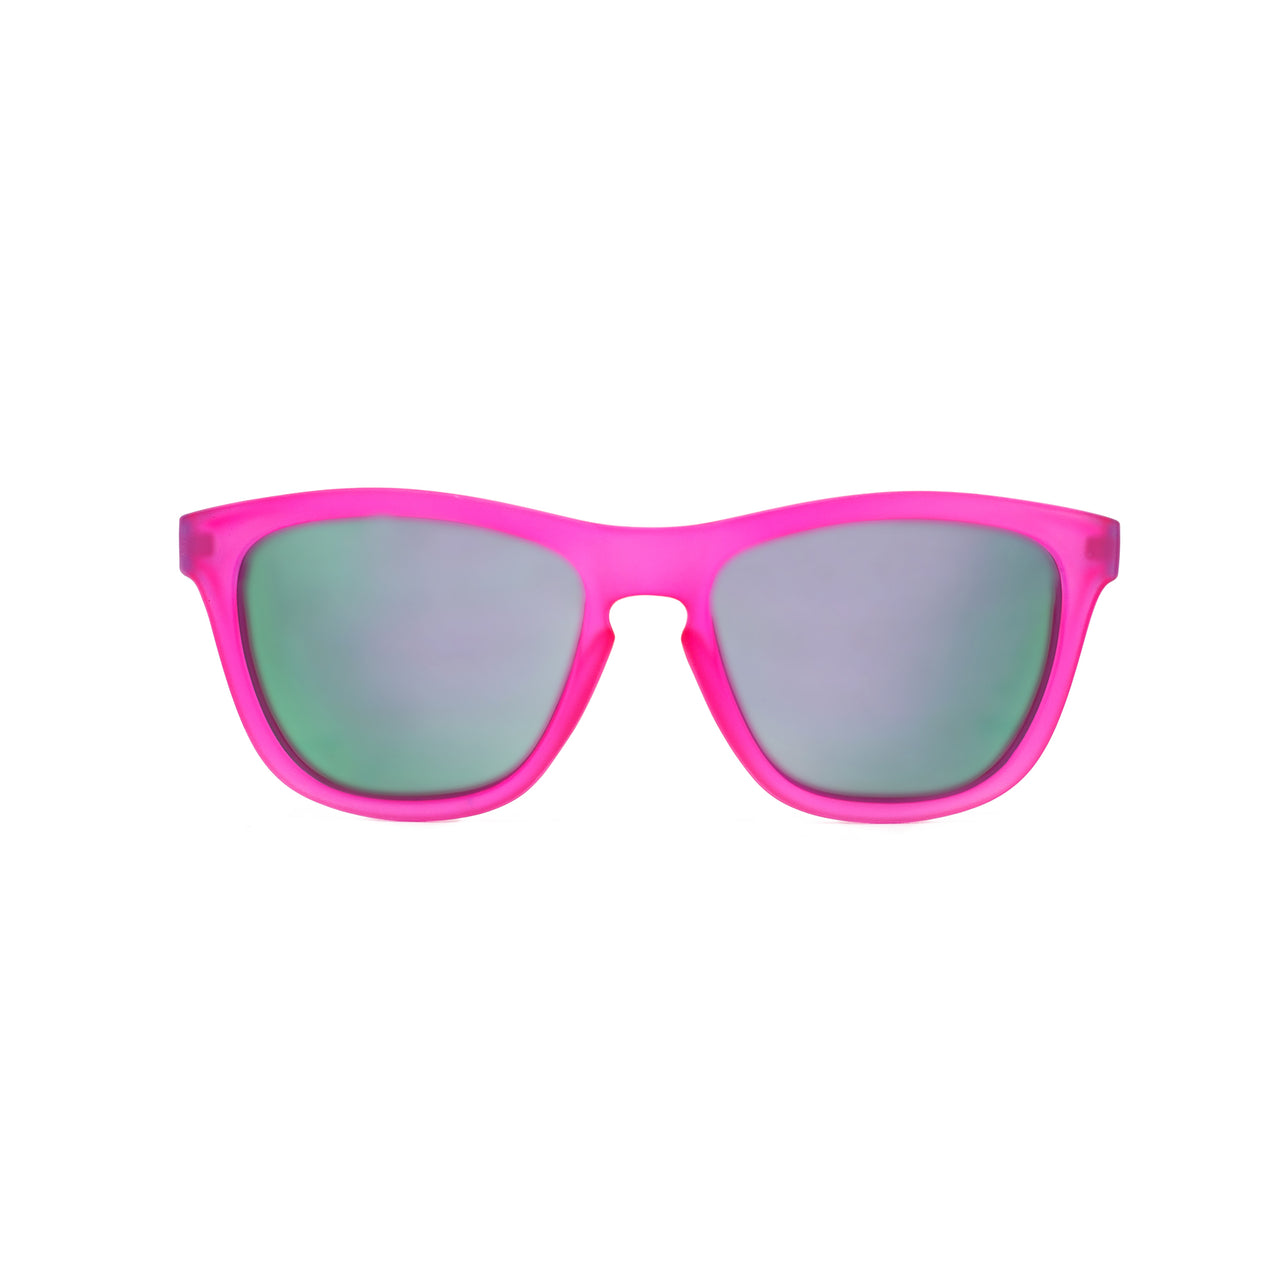 Neon Pink Wayfarer Design Sunglasses with an Iridescent Pink Lens | eBay